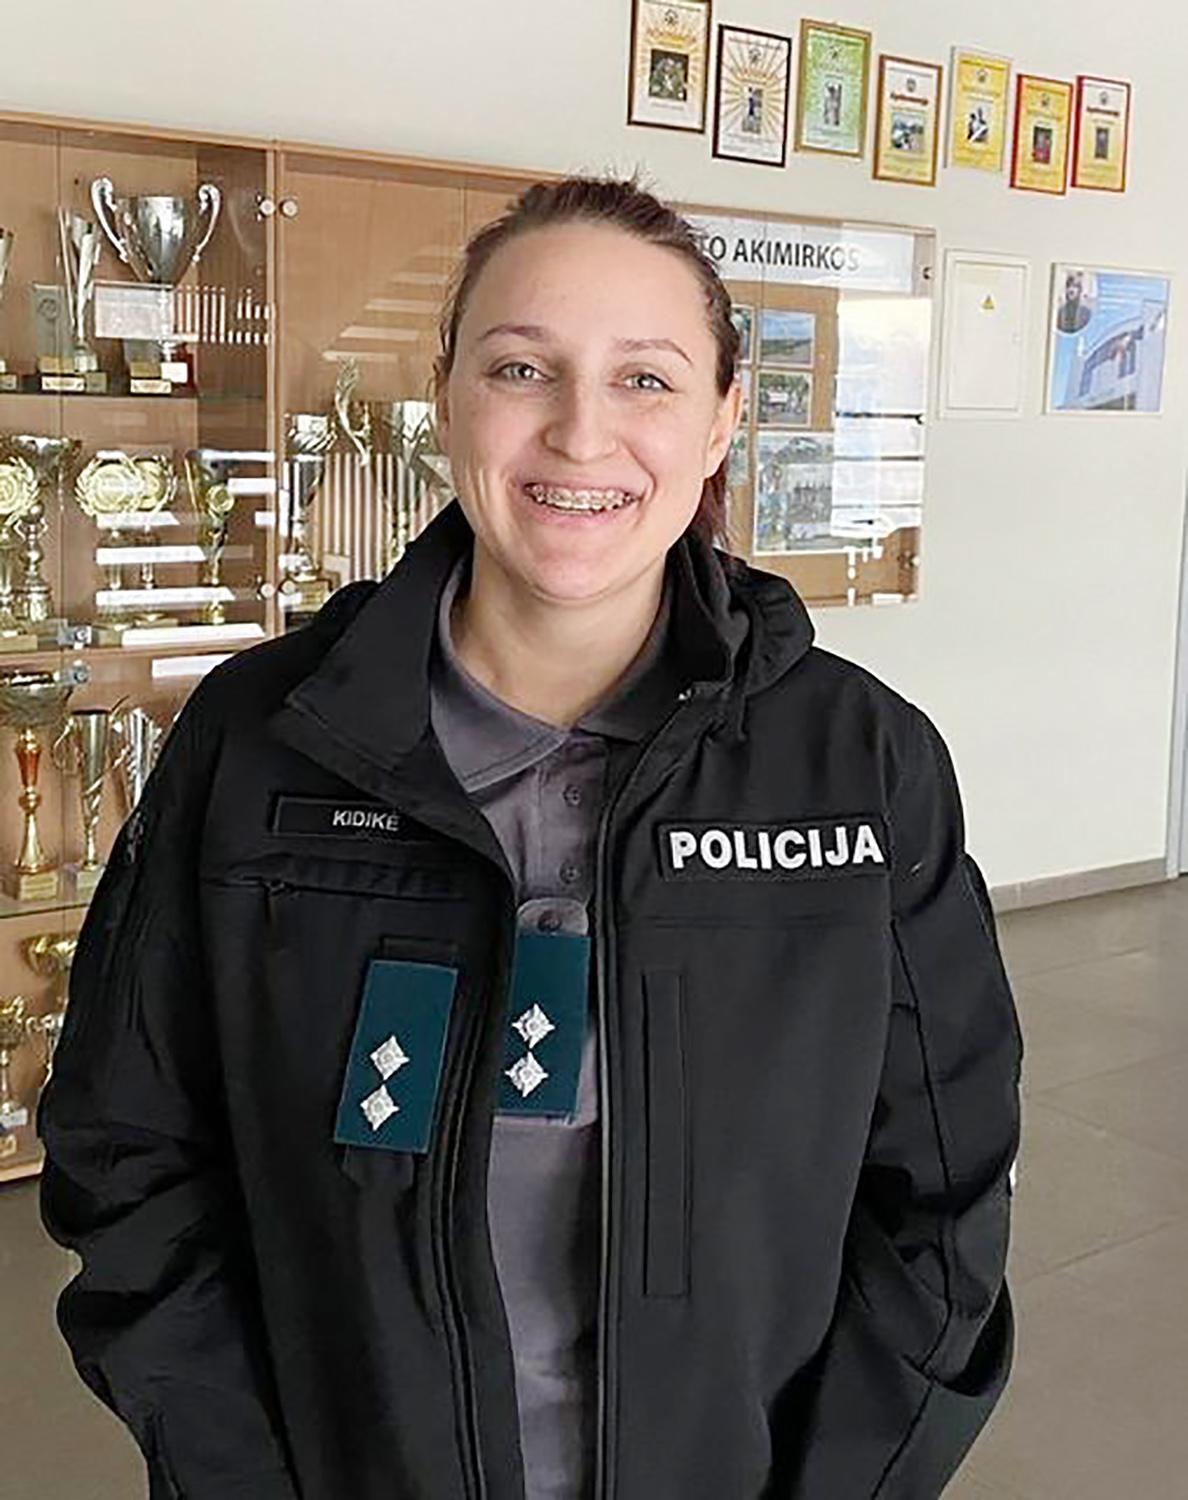 Policijos komisariate – nauja darbuotoja / Policijos pareigūnų gretas papildė nauja darbuotoja – Sonata Kidikė.